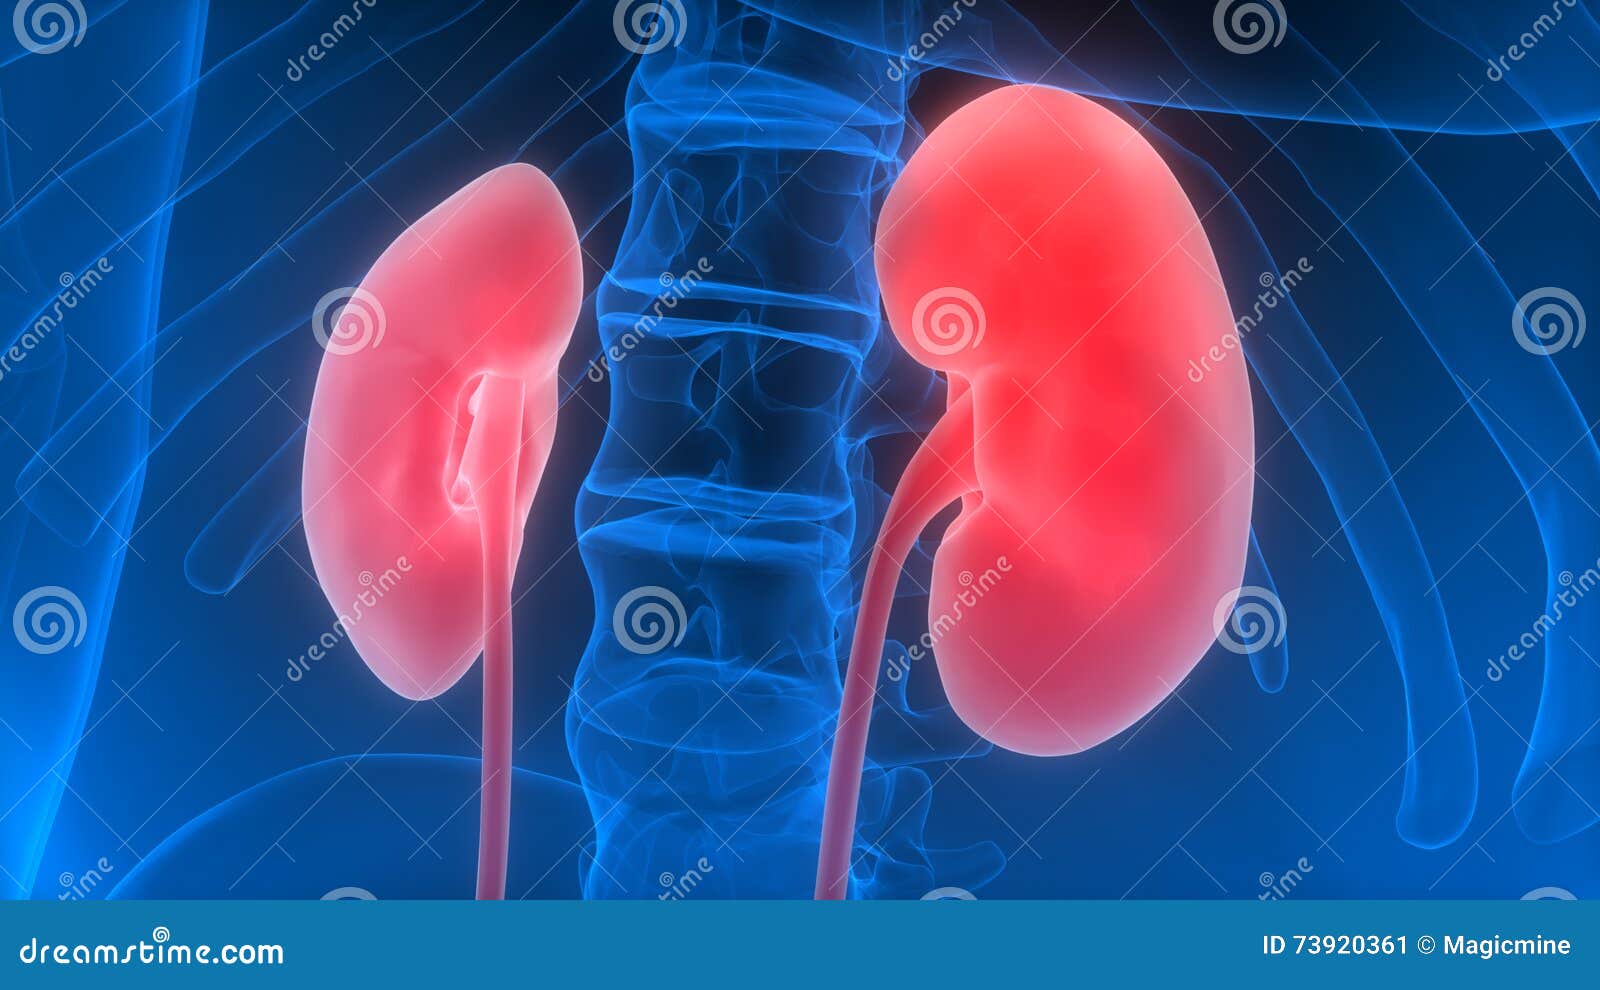 Human Body Organs (Kidneys) Stock Illustration - Illustration of design